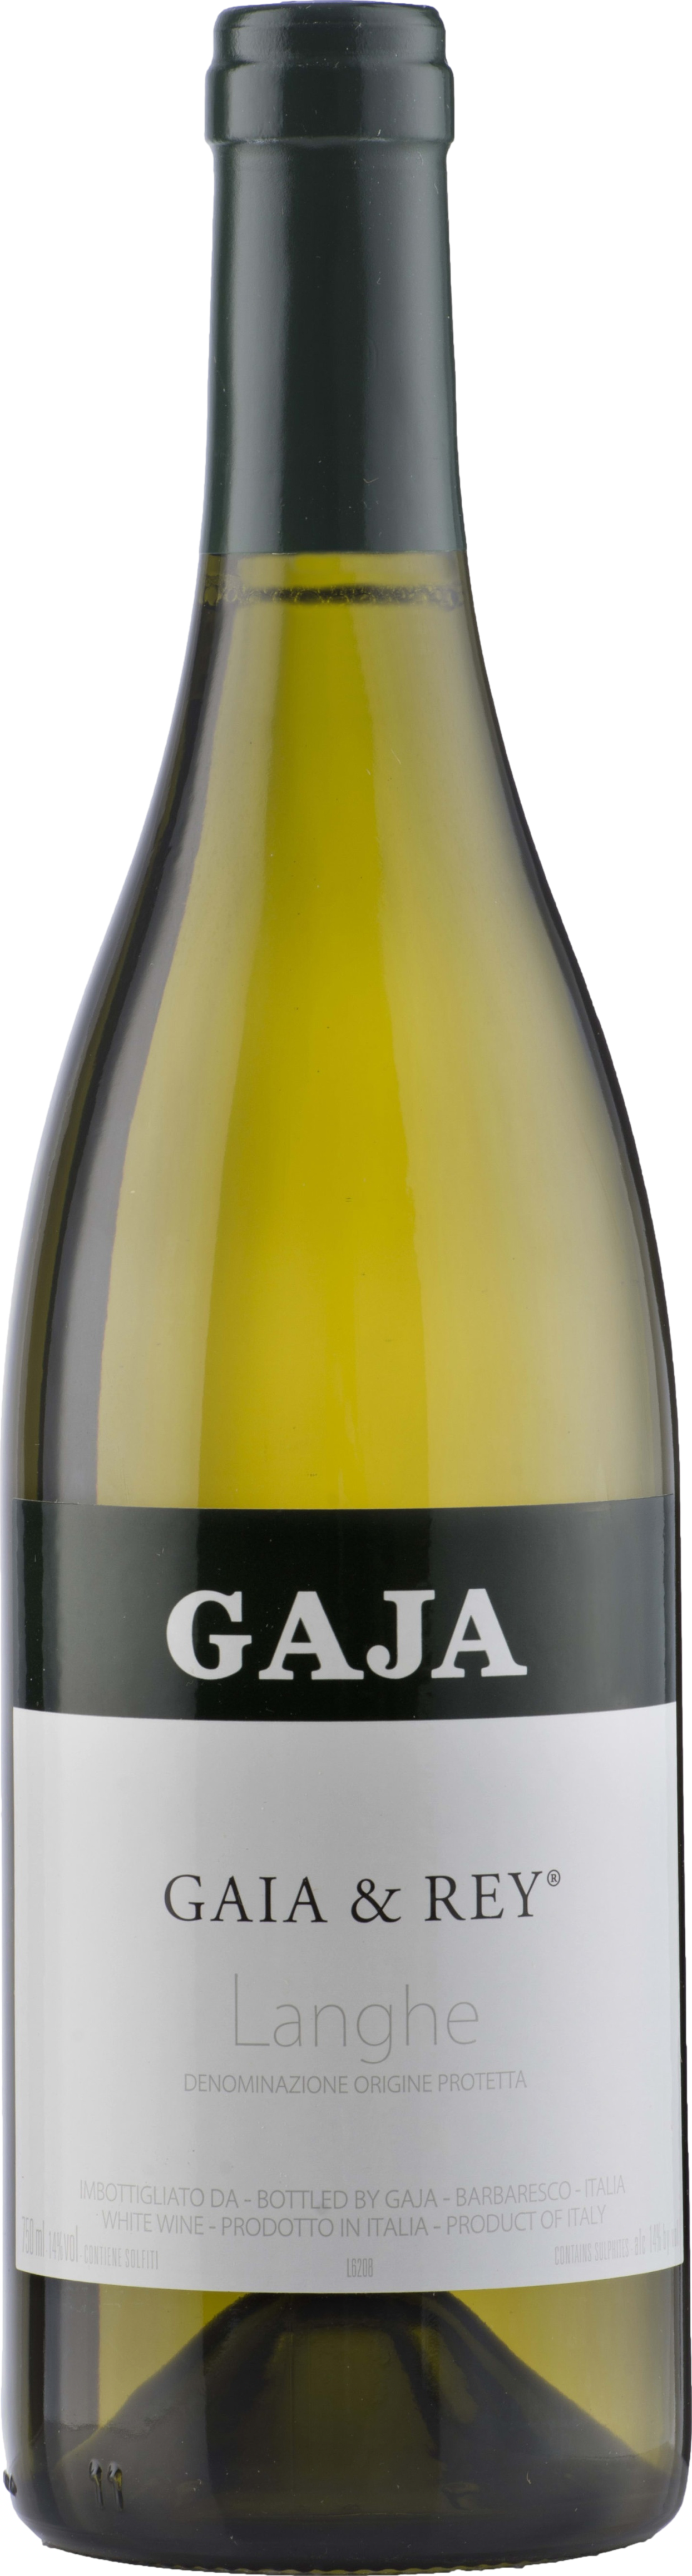 Gaja Gaia & Rey Chardonnay 2021